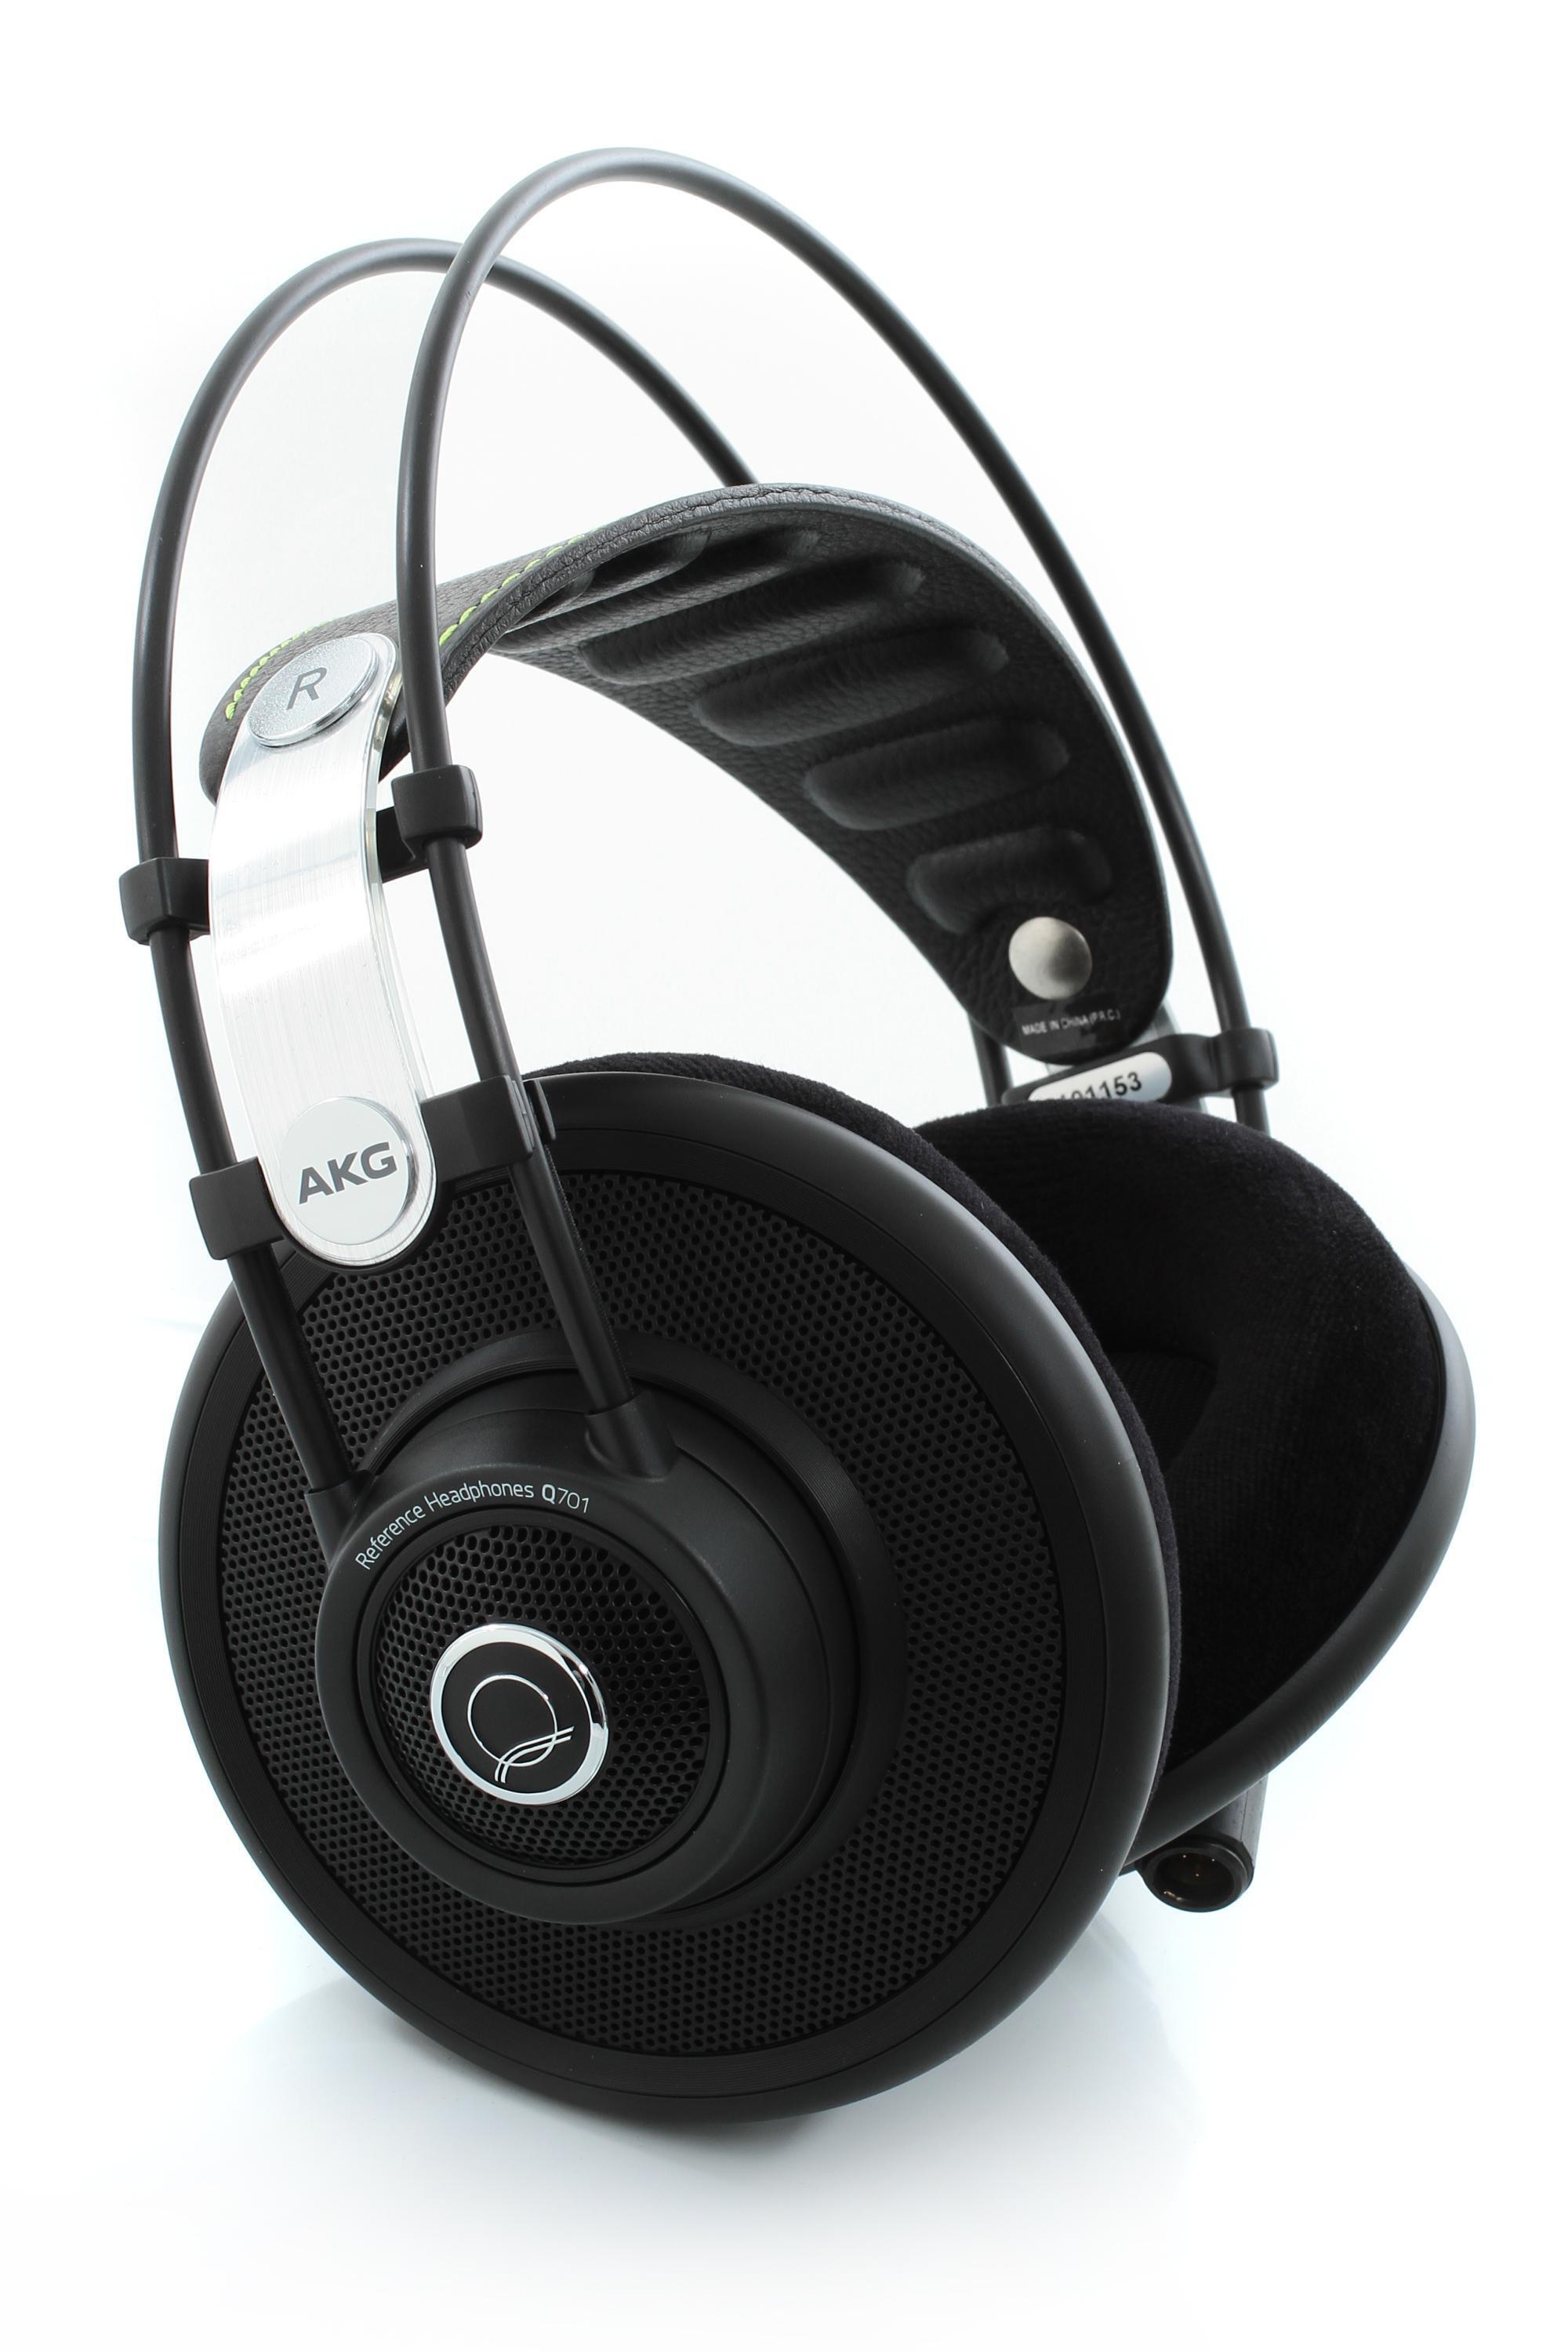 AKG Quincy Jones Q701 Stereo Headphones, Black - Semi-open